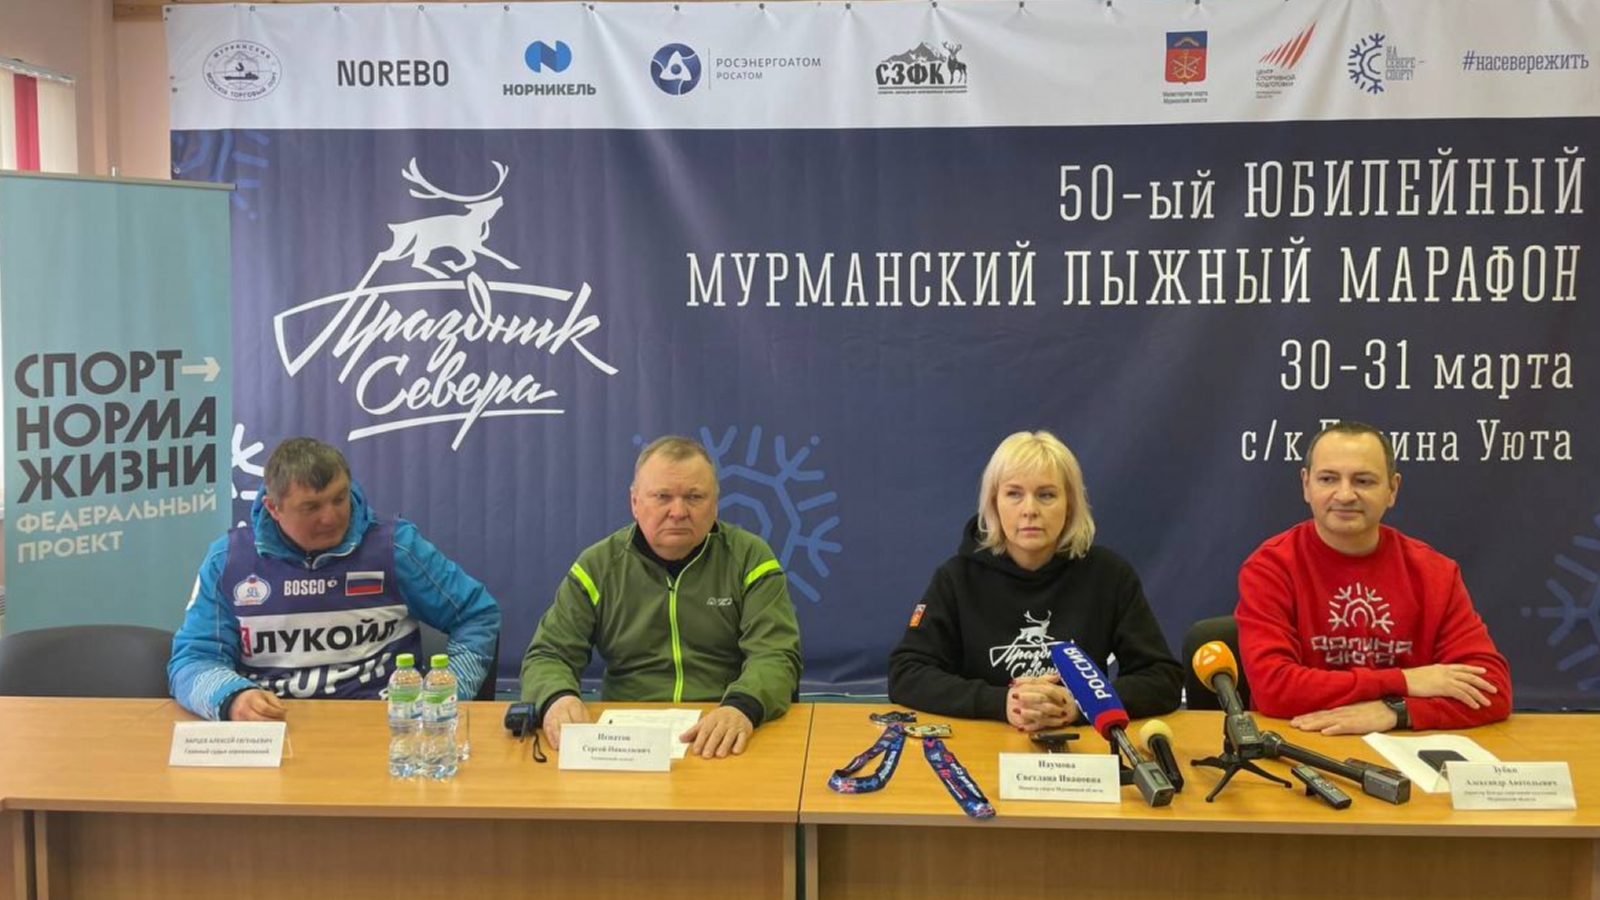 Три участника первого Мурманского лыжного марафона вновь выйдут на старт